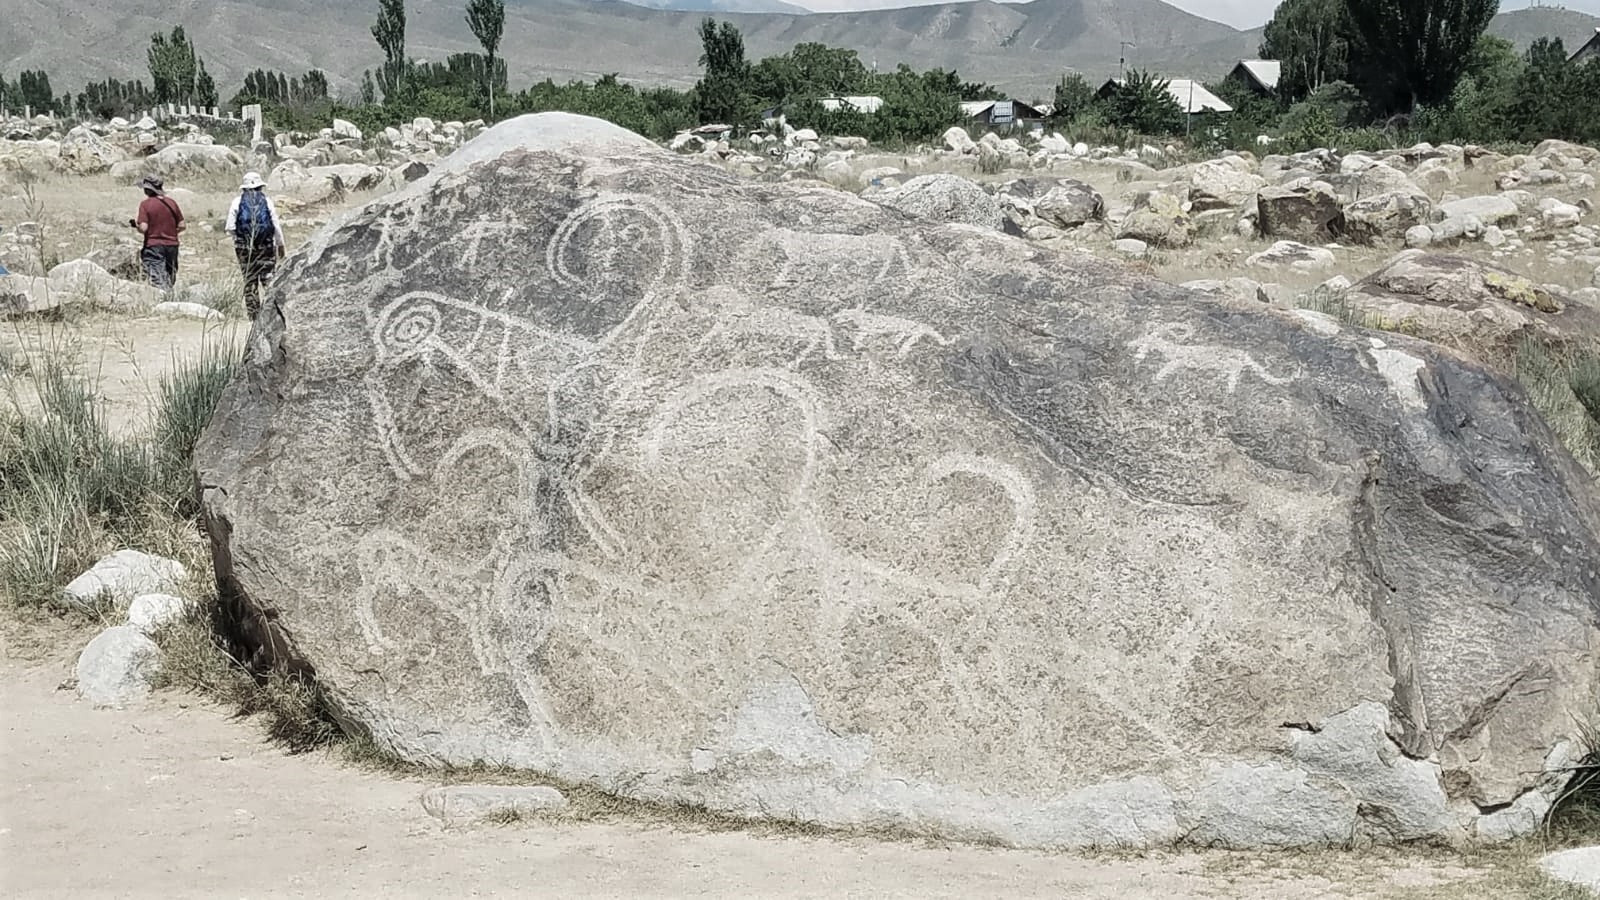 Tamgaly petroglyphs